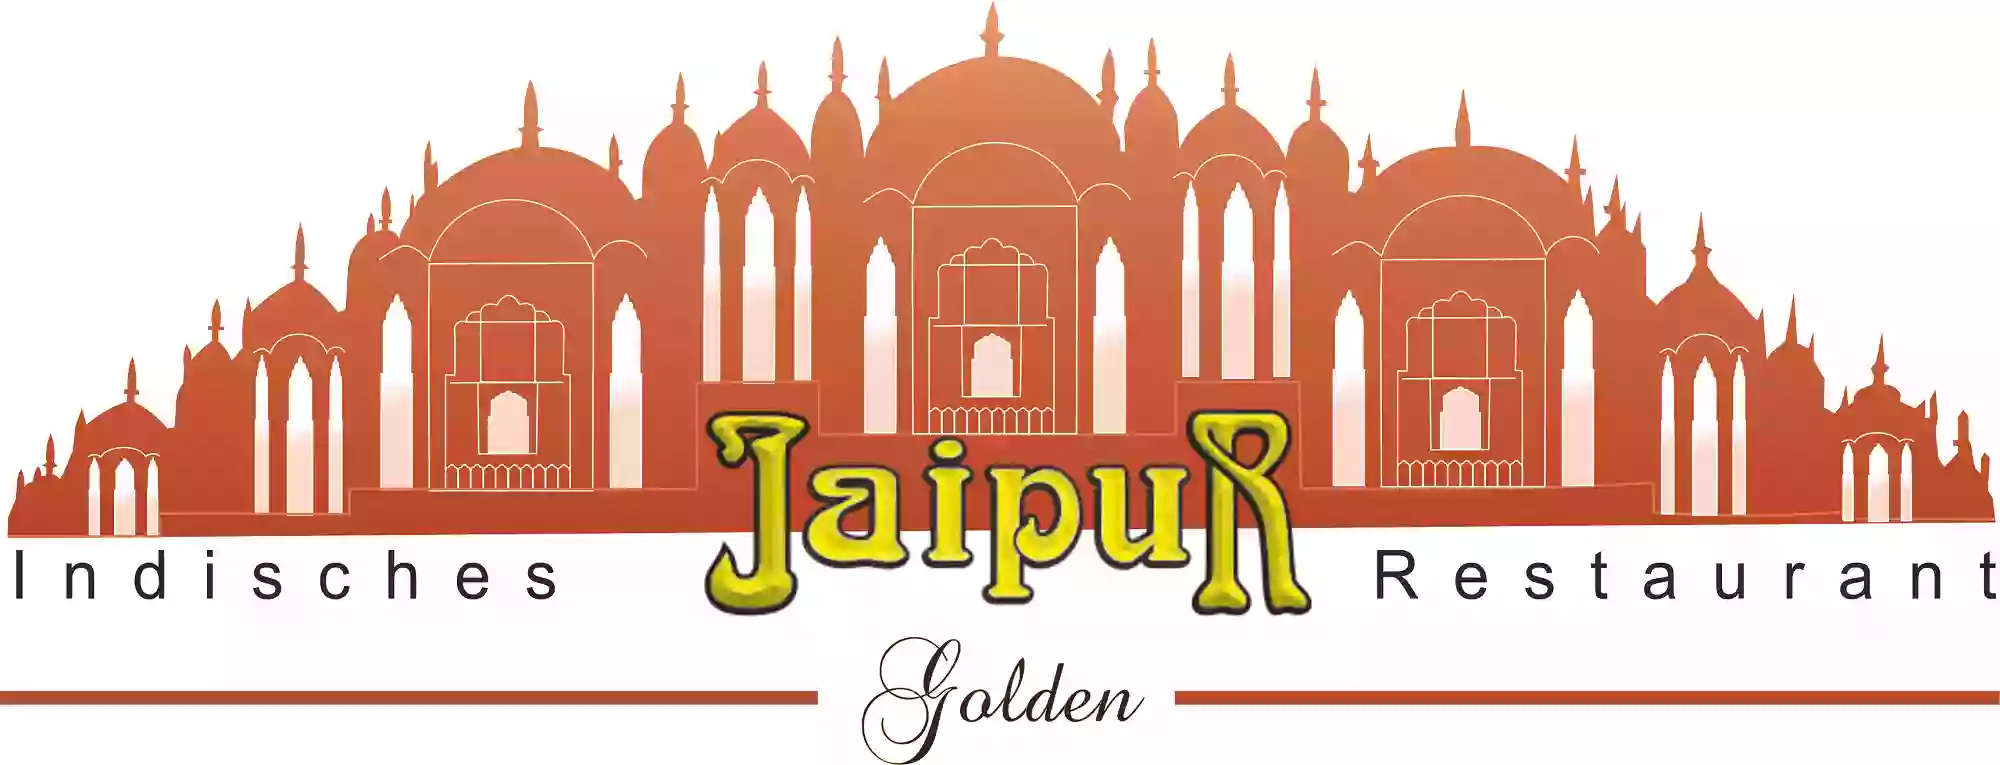 Jaipur Golden